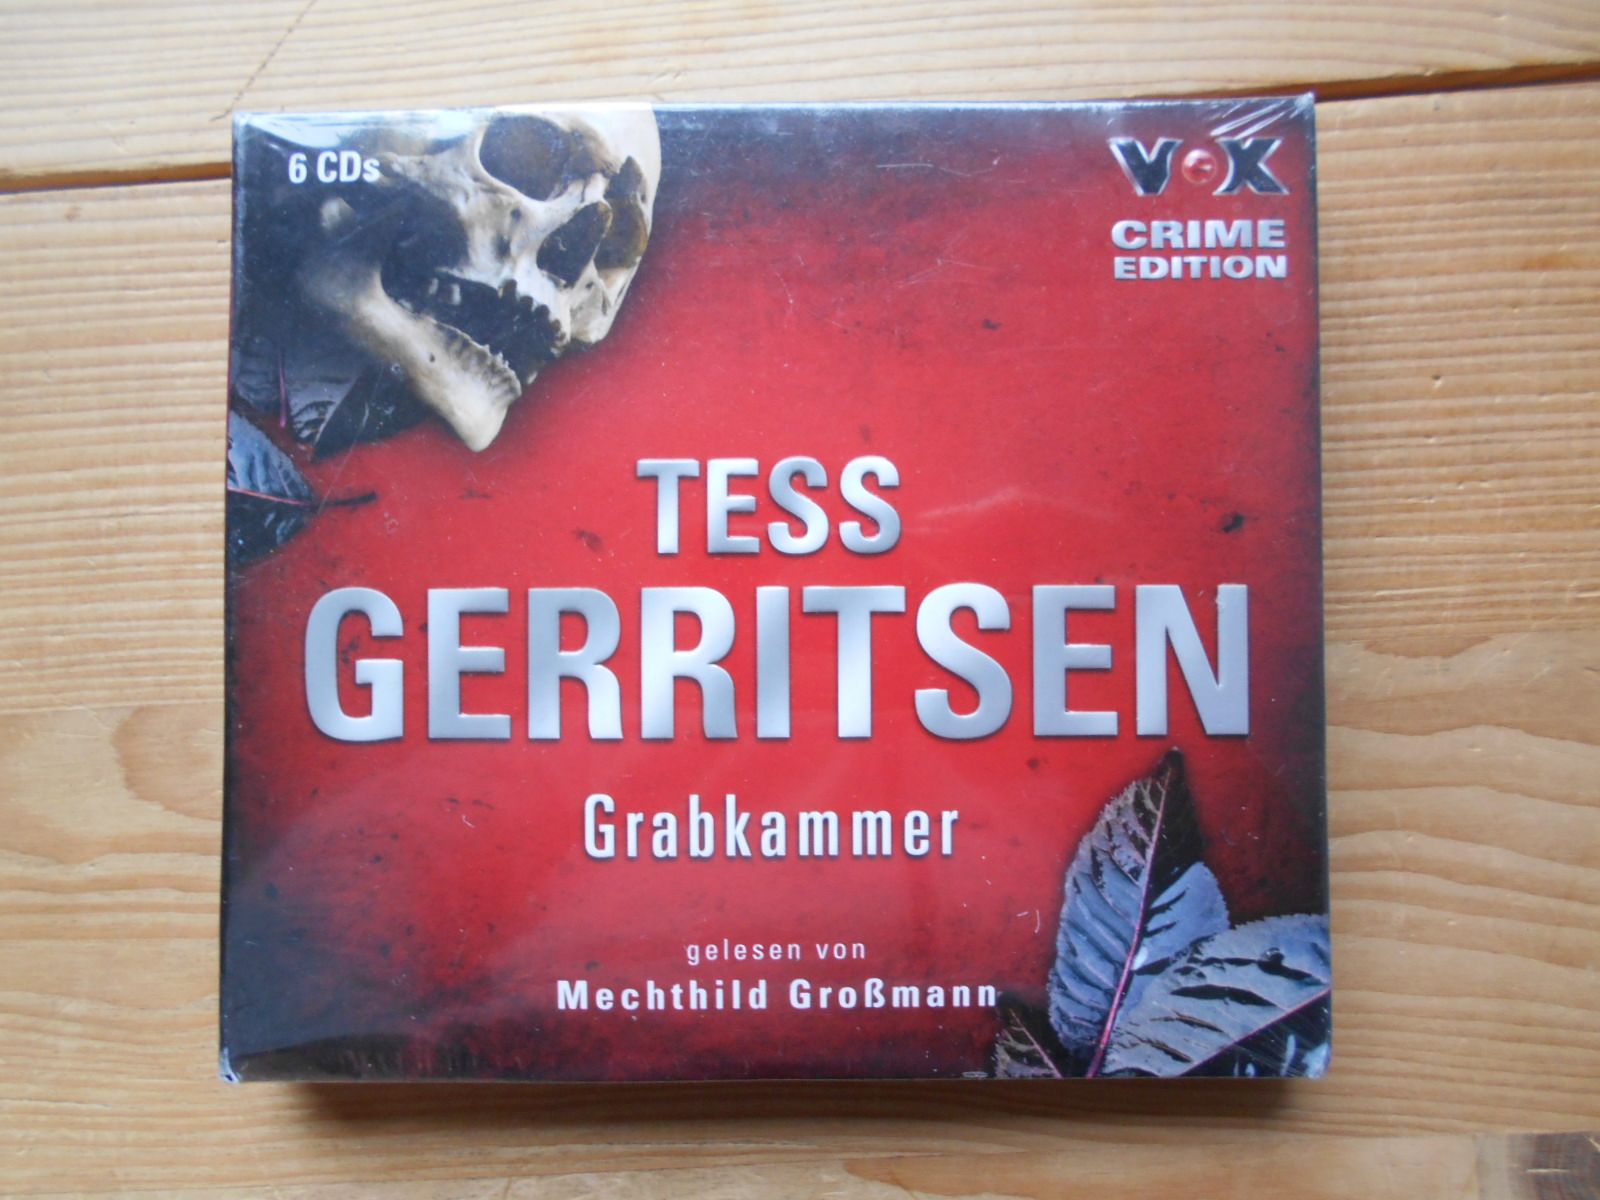 Grabkammer, 6 CDs (VOX Crime Edition) - Gerritsen, Tess und Mechthild Großmann